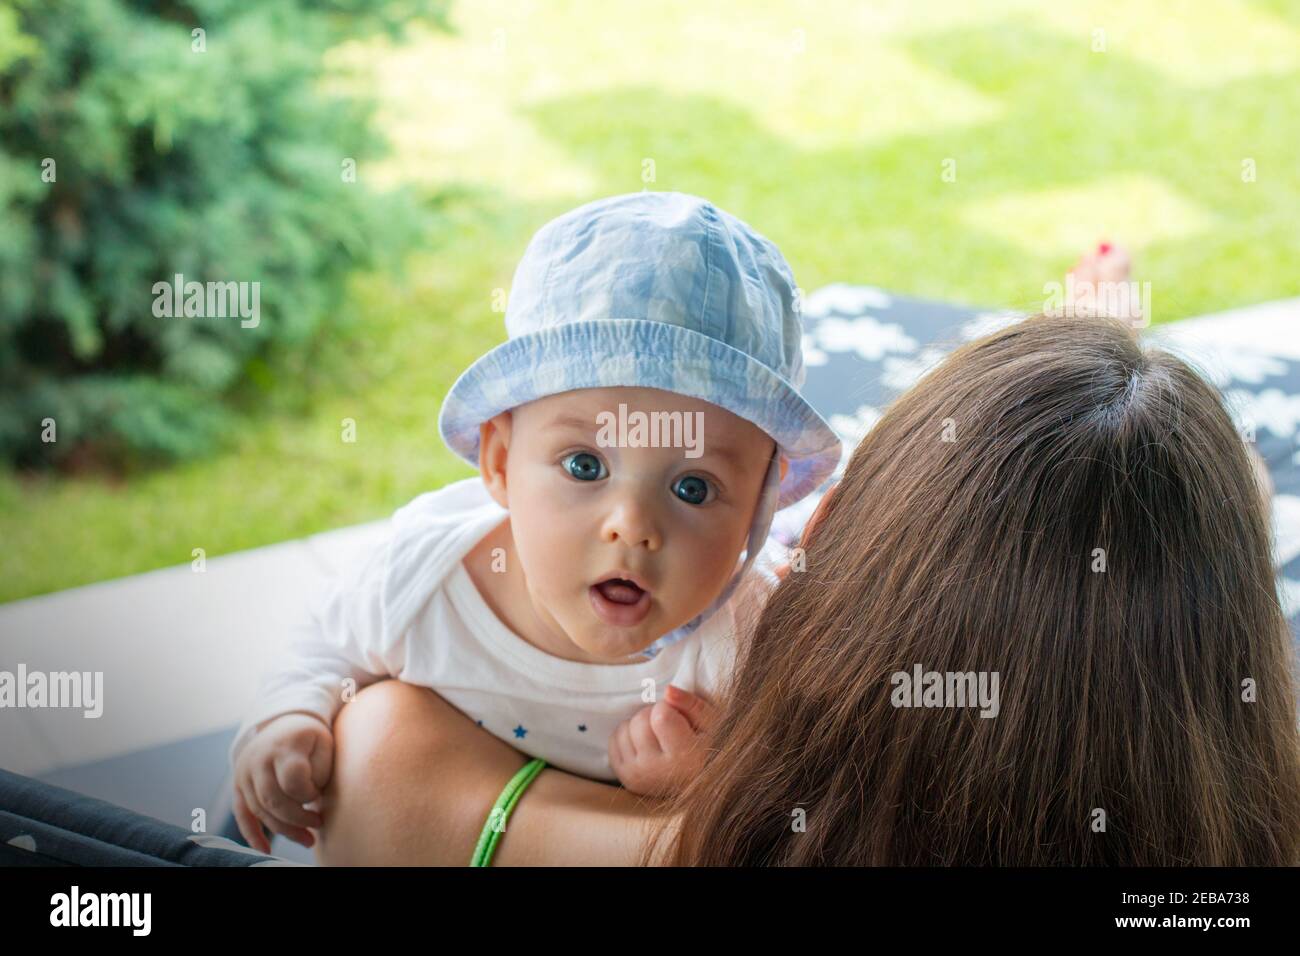 Überrascht Baby Gesicht mit faszinierten Ausdruck, kleine niedliche Kind in den Armen der Mutter schaut mit offenem Mund und fokussierten weit offenen blauen Augen Stockfoto